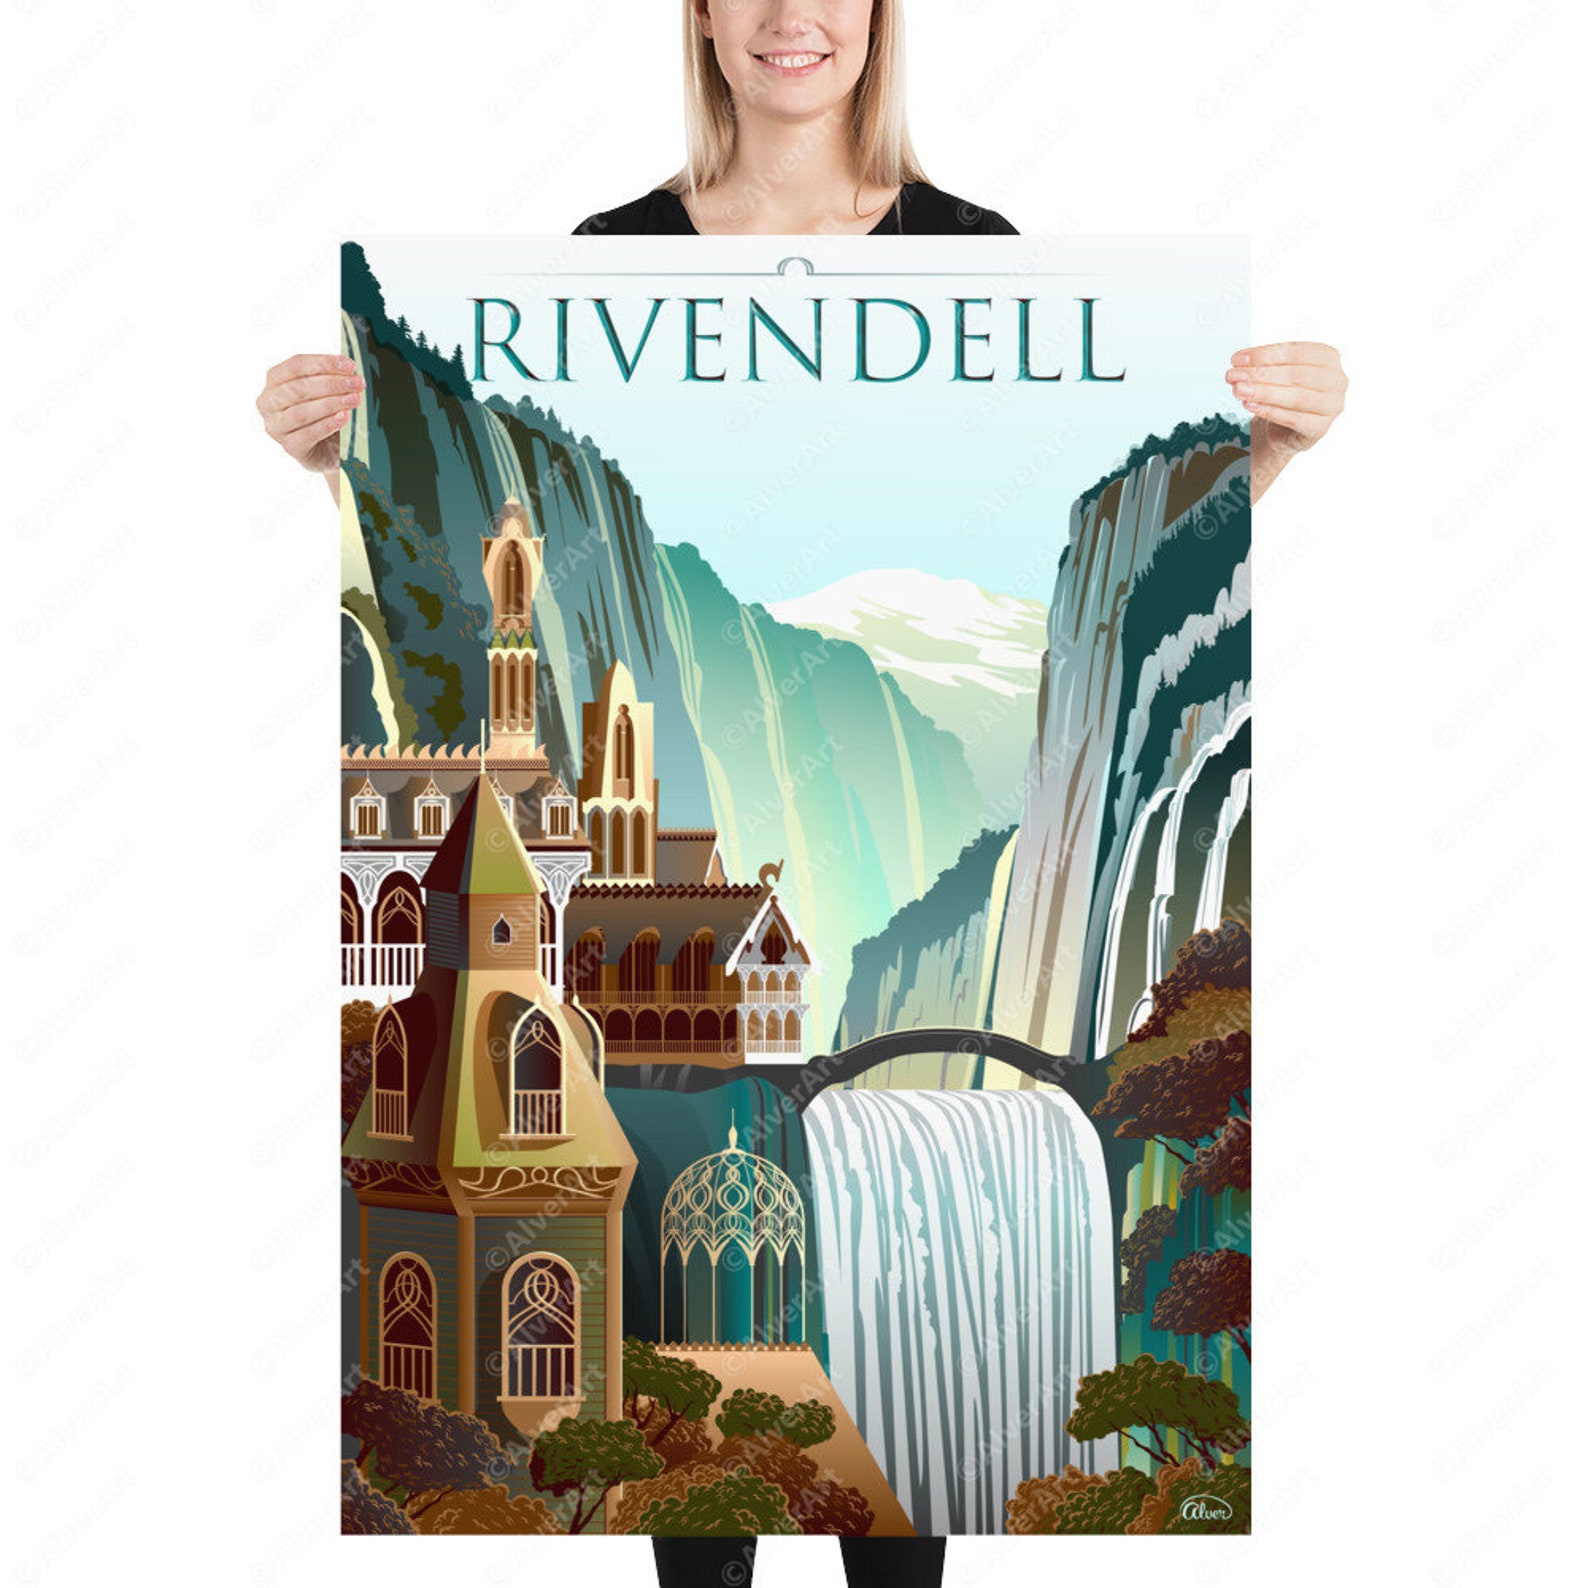 visit rivendell poster